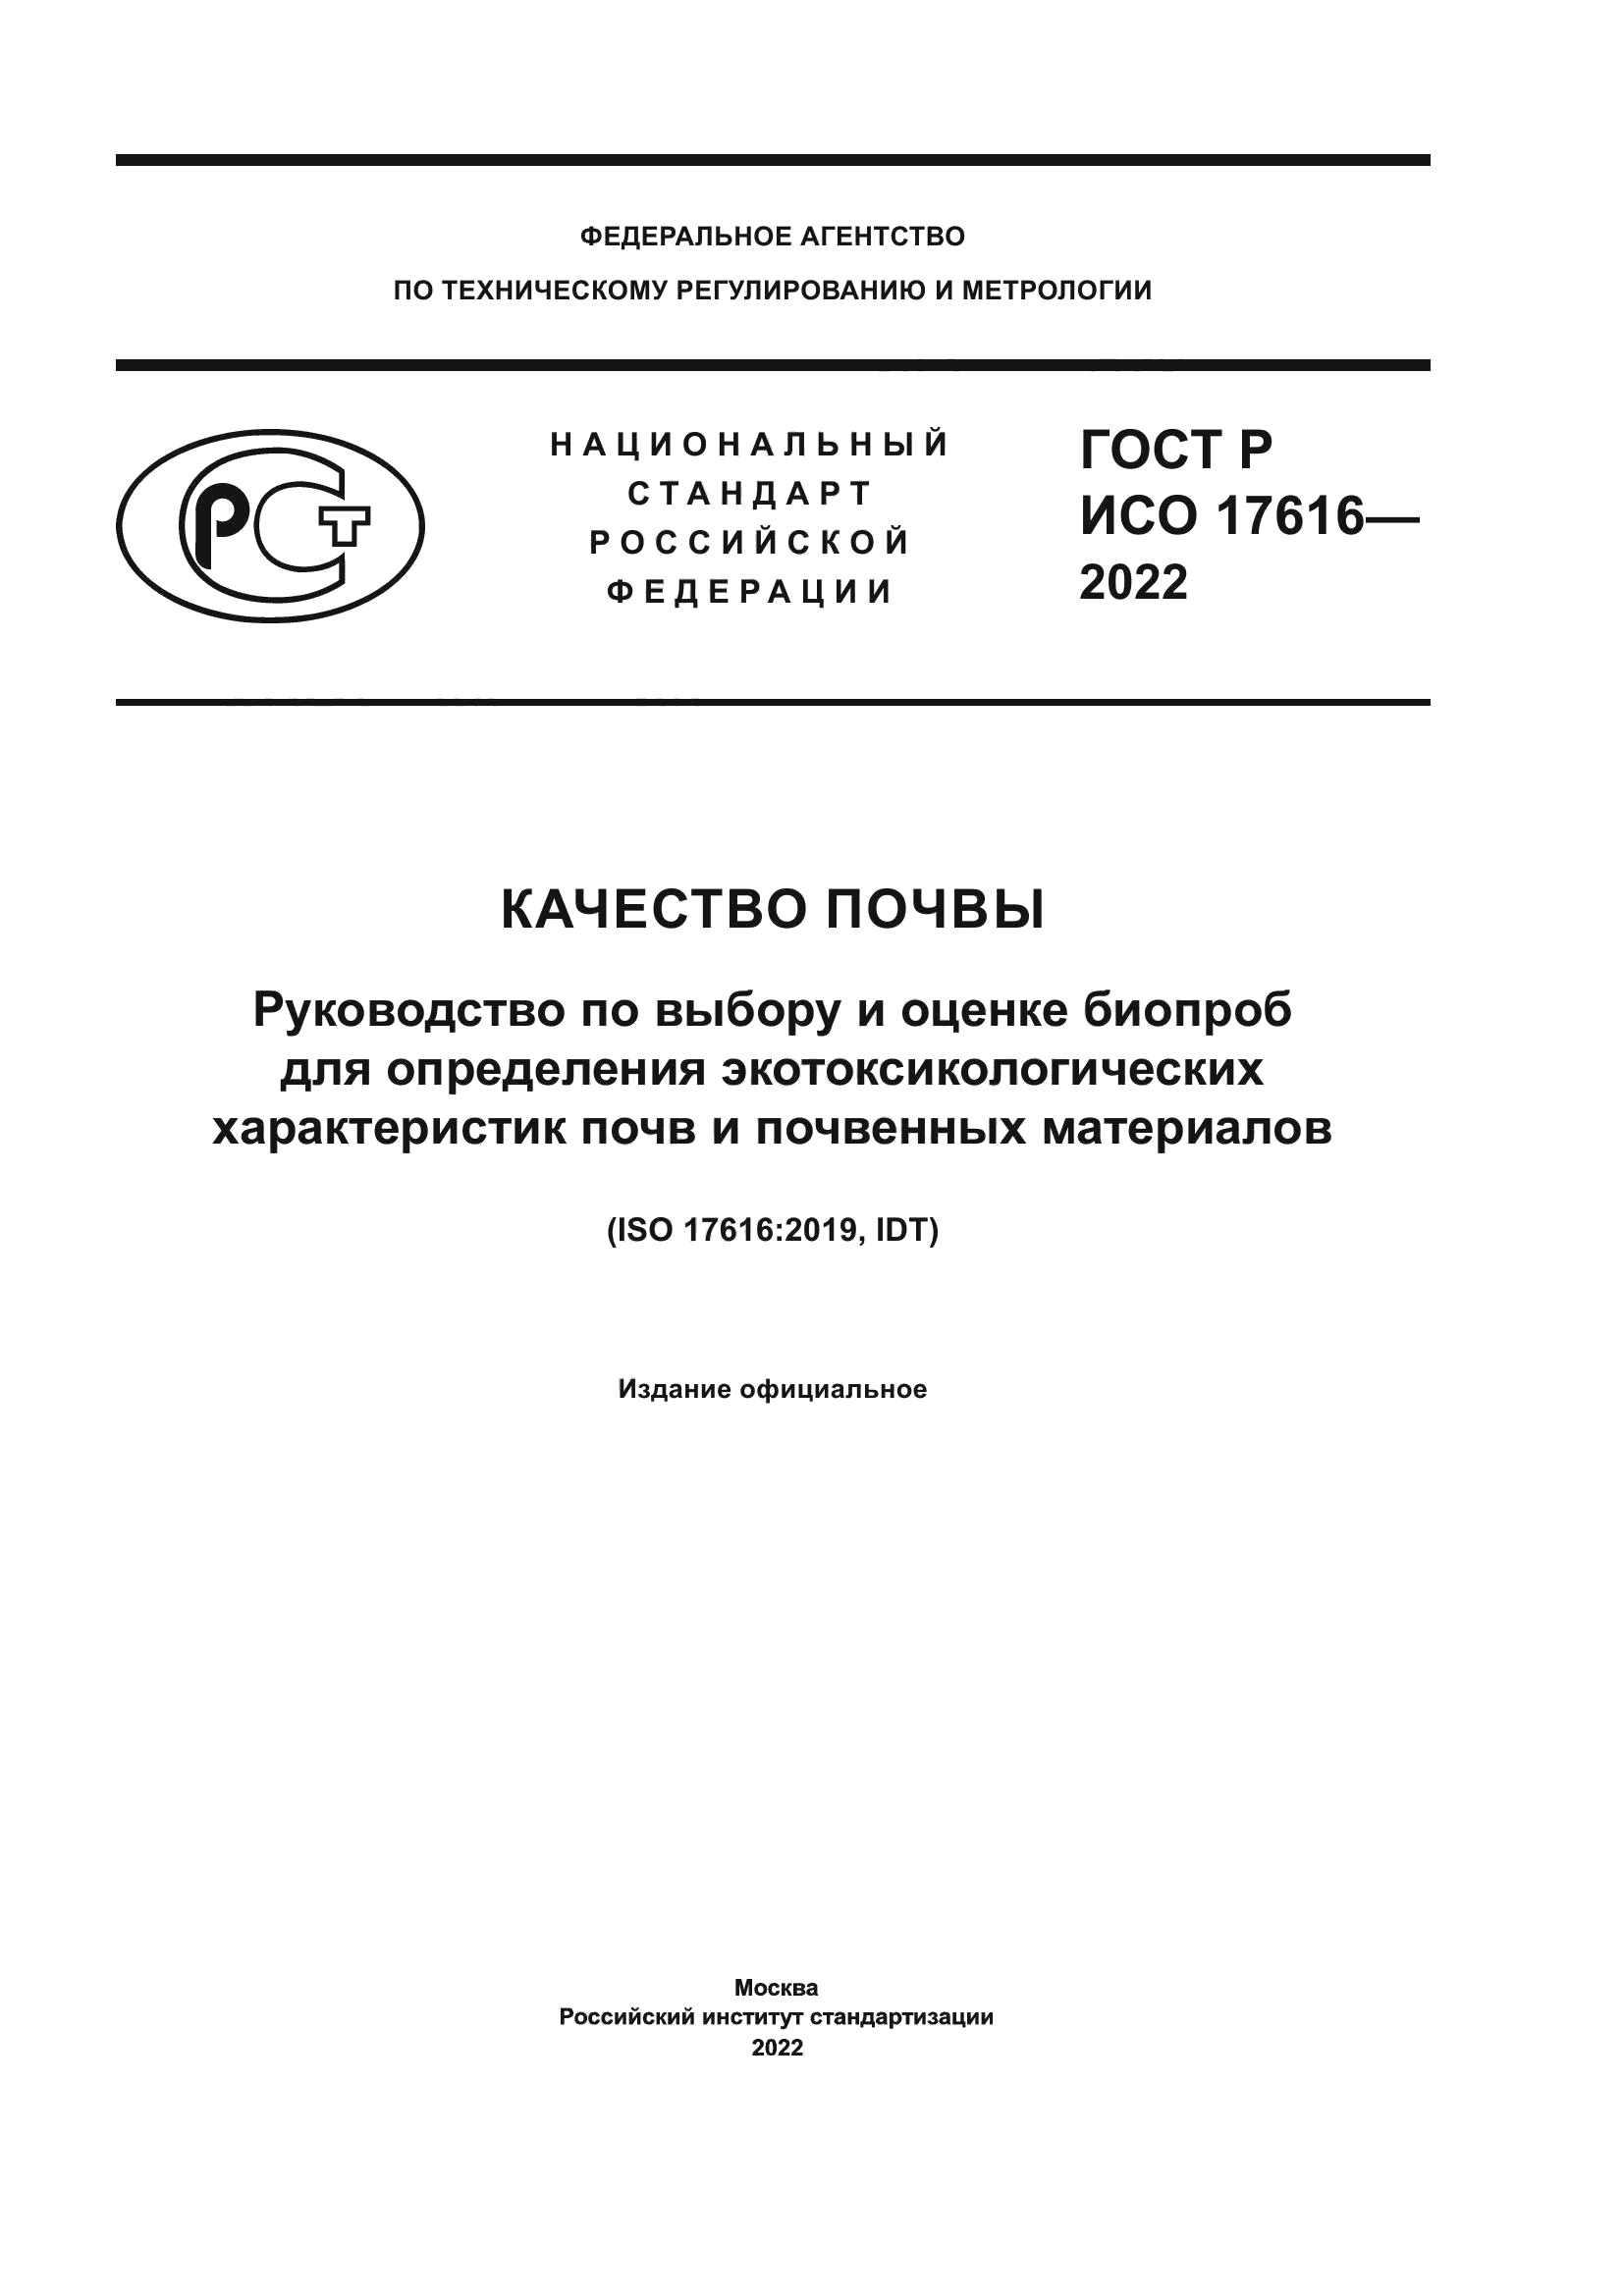 ГОСТ Р ИСО 17616-2022